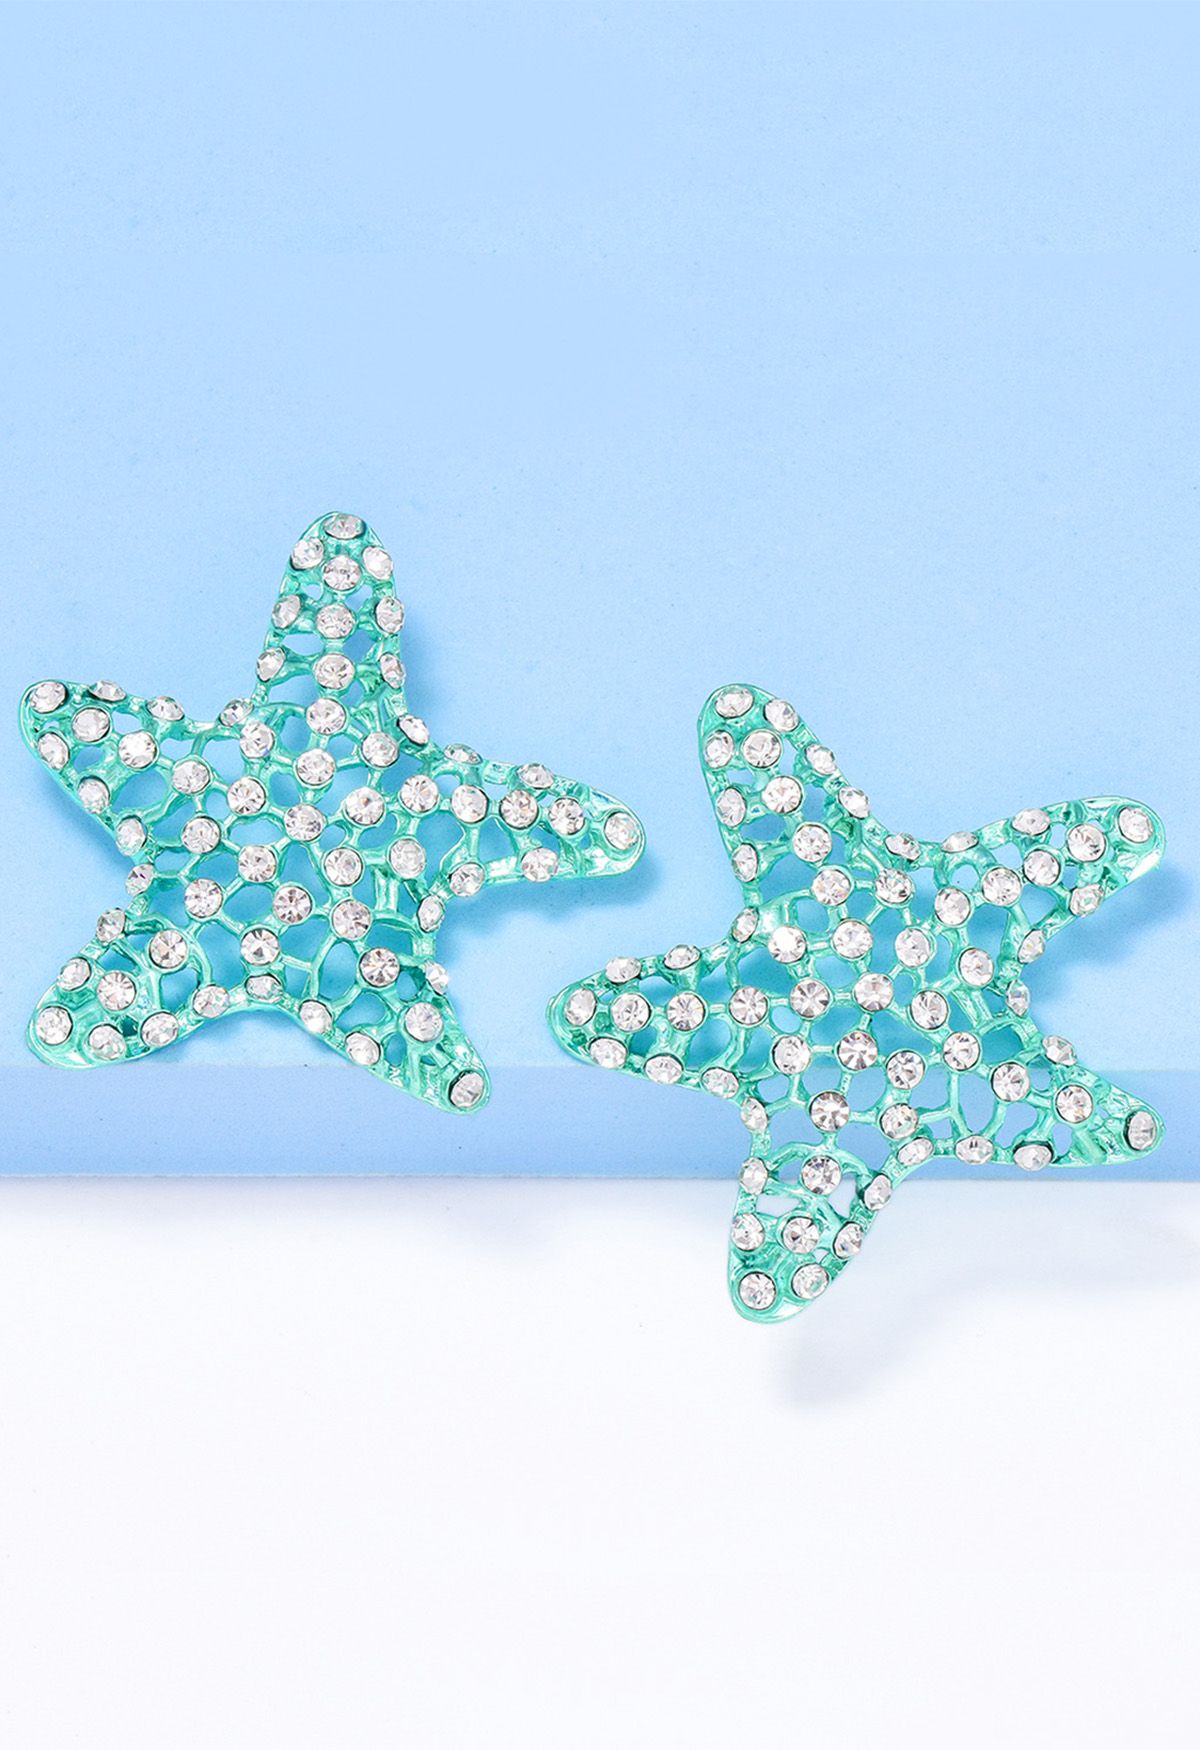 Aretes de estrella de mar con circonitas huecas en menta